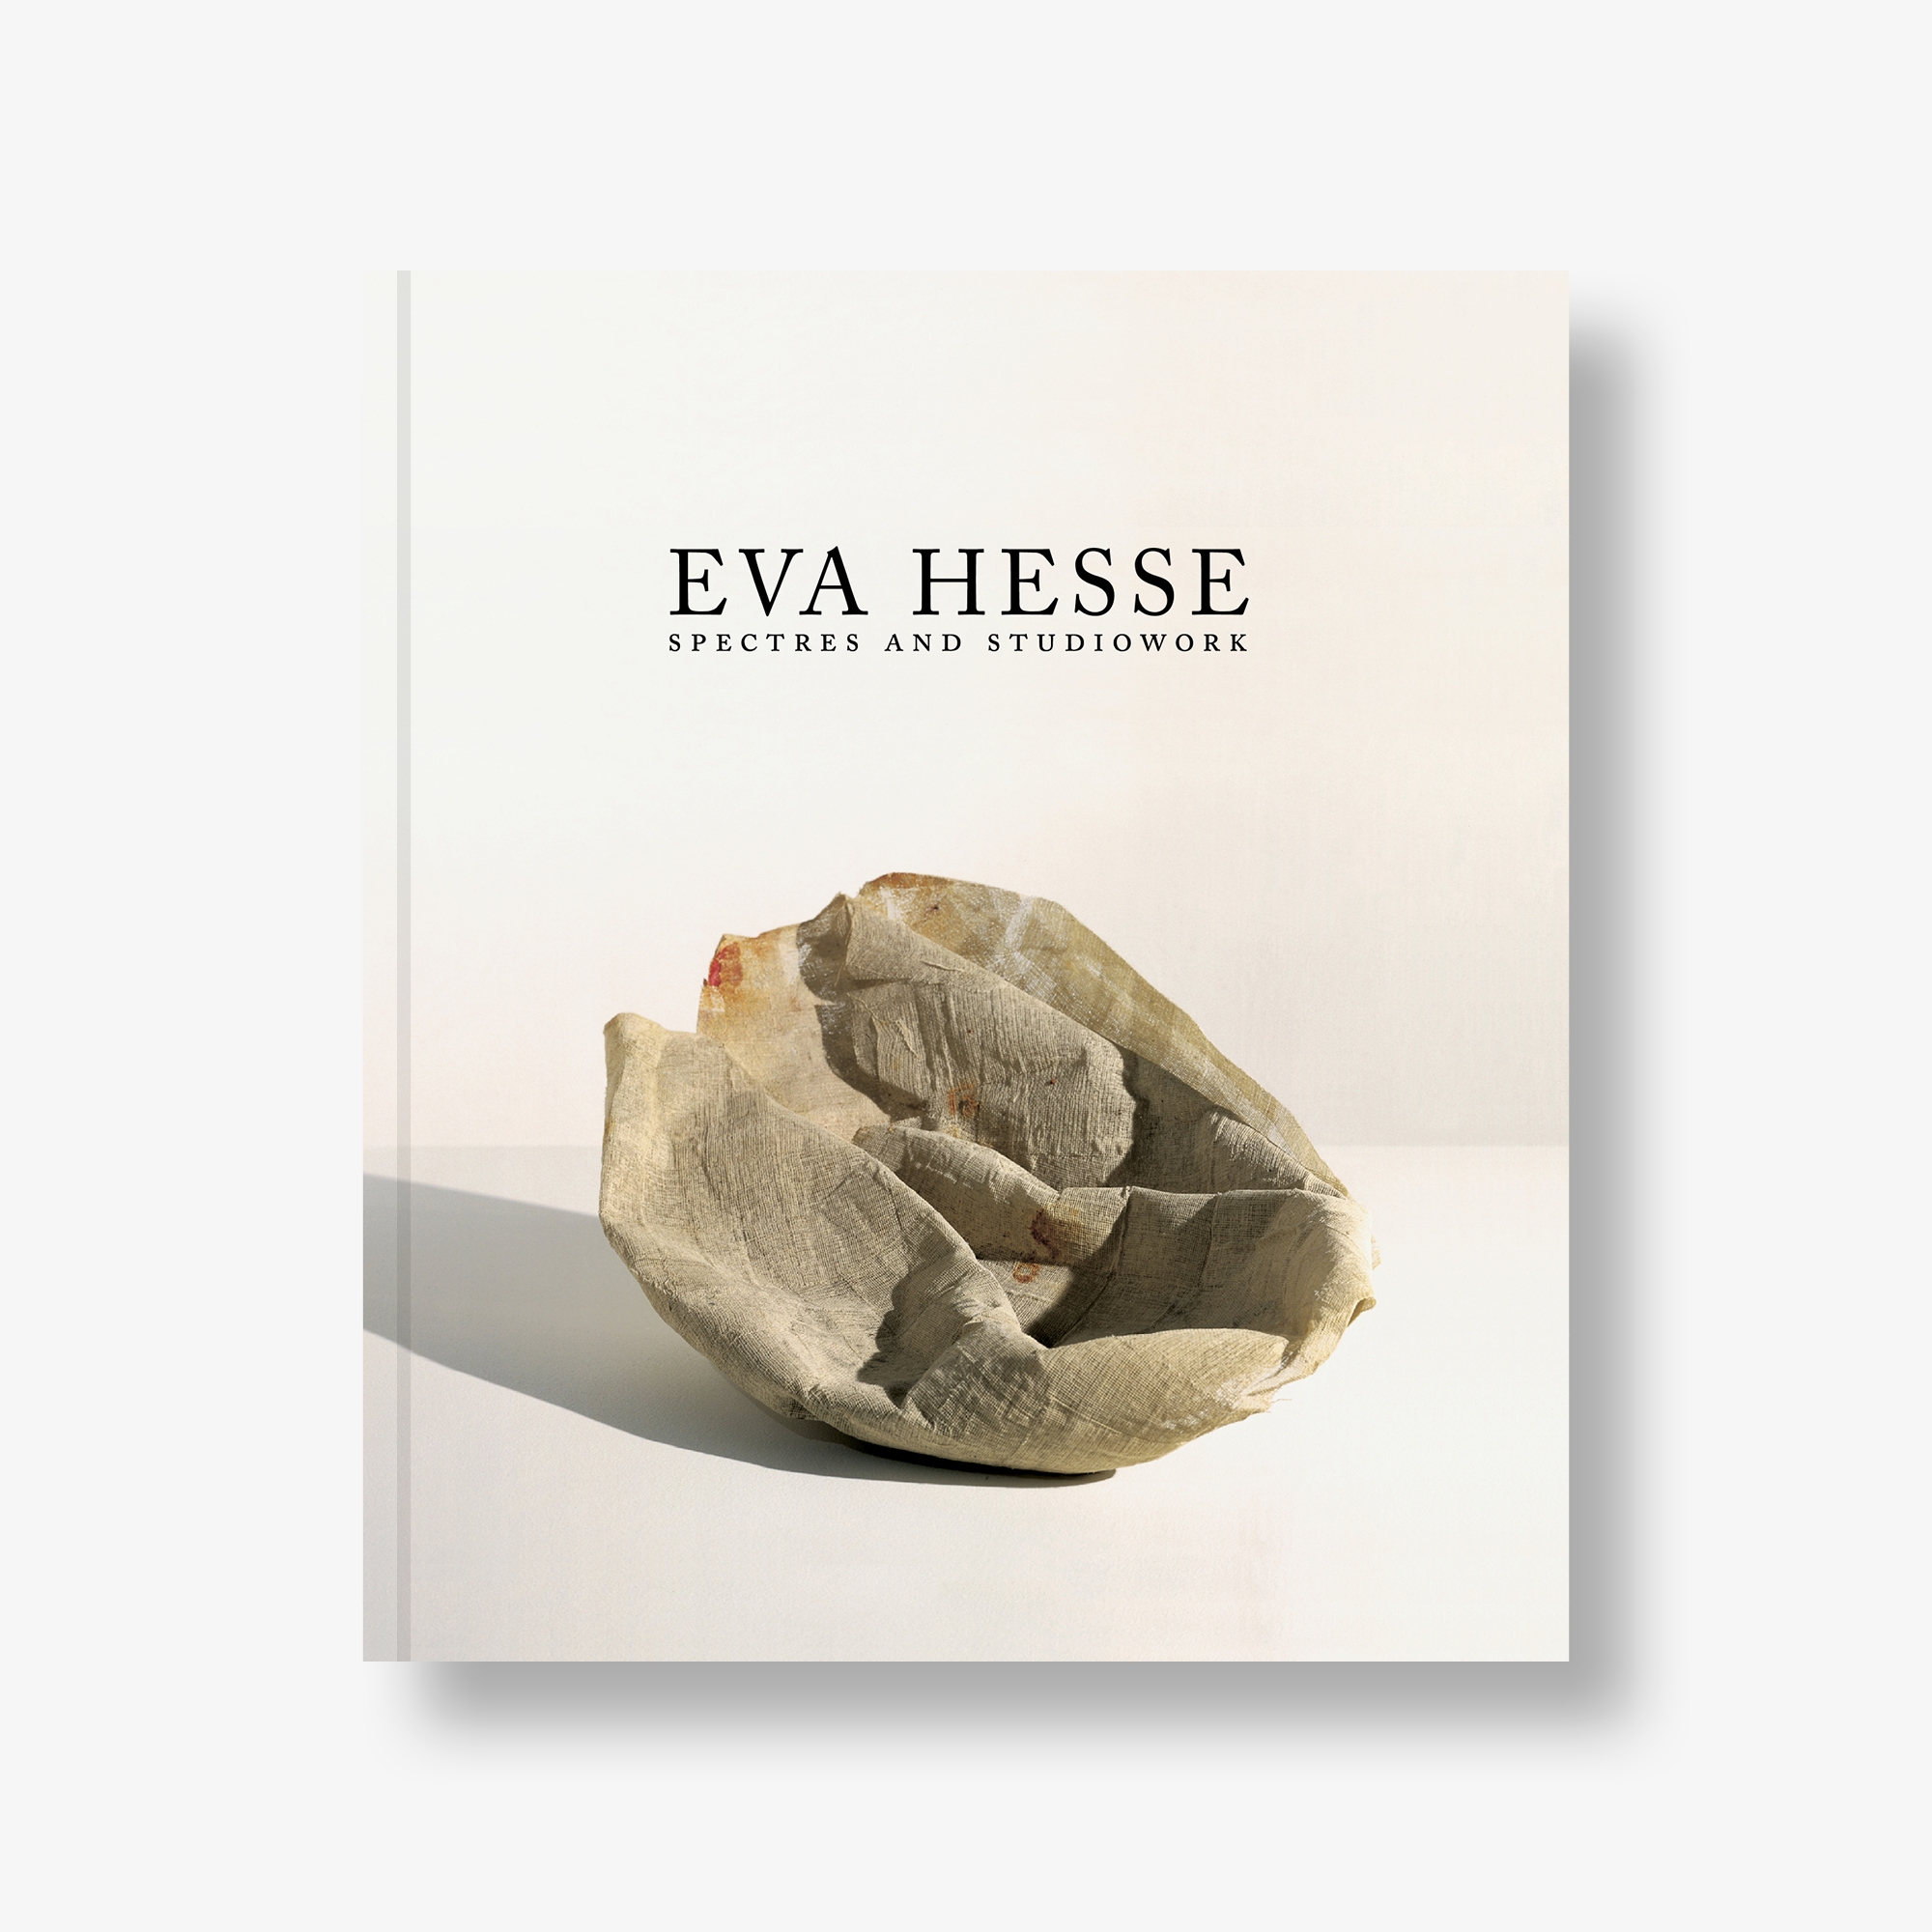 Eva Hesse: Spectres and Studiowork